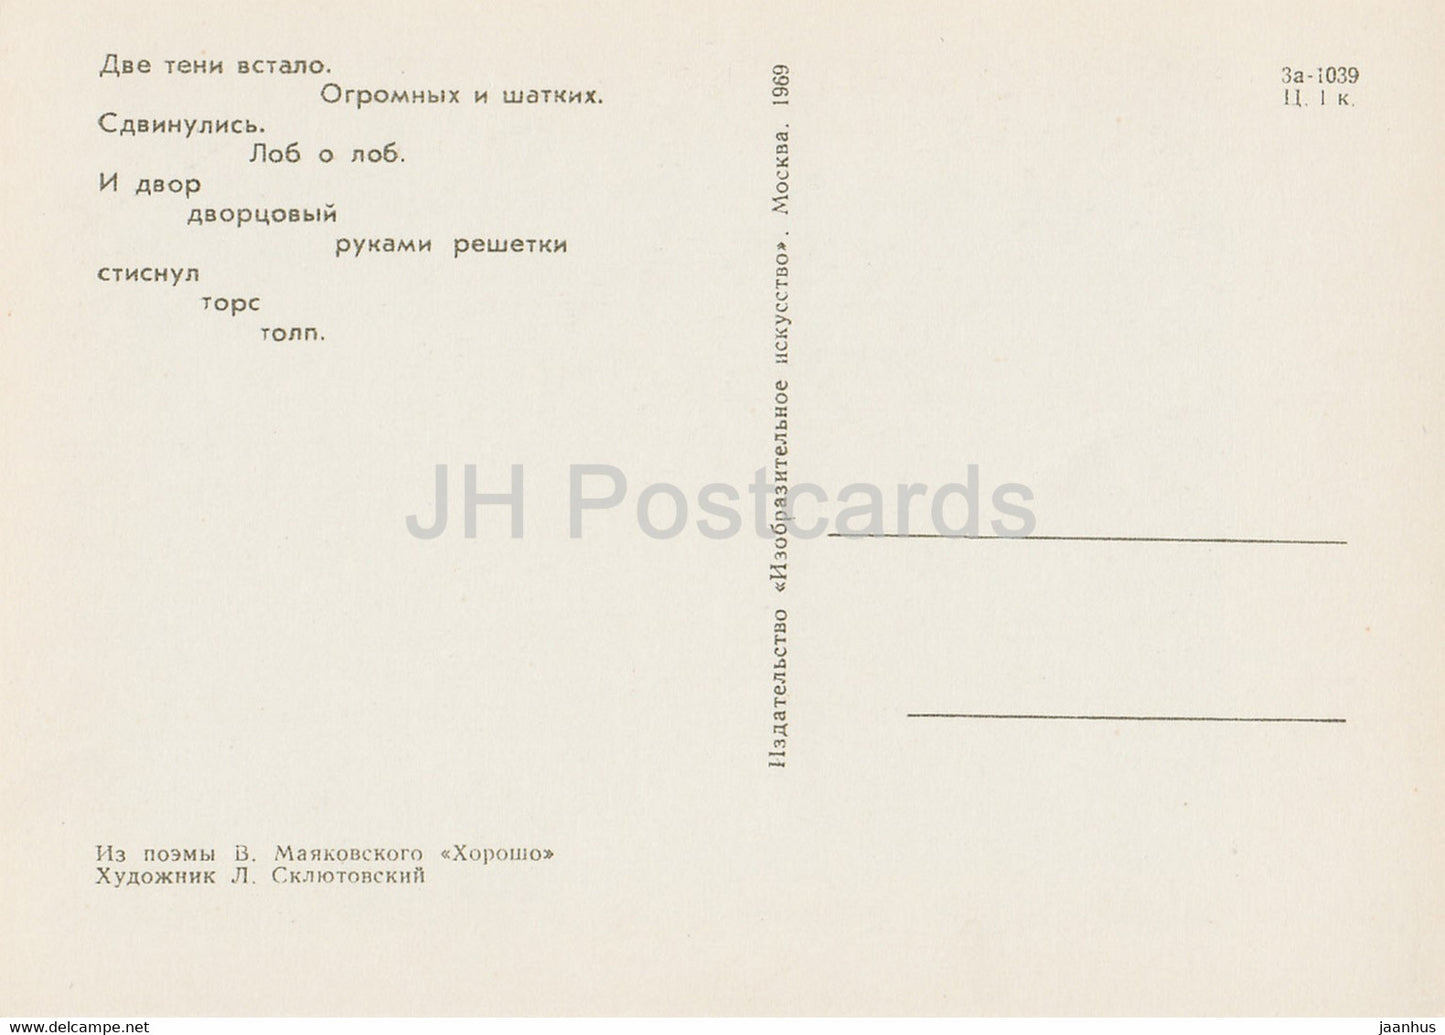 Gedicht Horosho von Mayakovsky – Gut – das Wappen des Zaren – Kunst von Sklyutovsky – 1969 – Russland UdSSR – unbenutzt